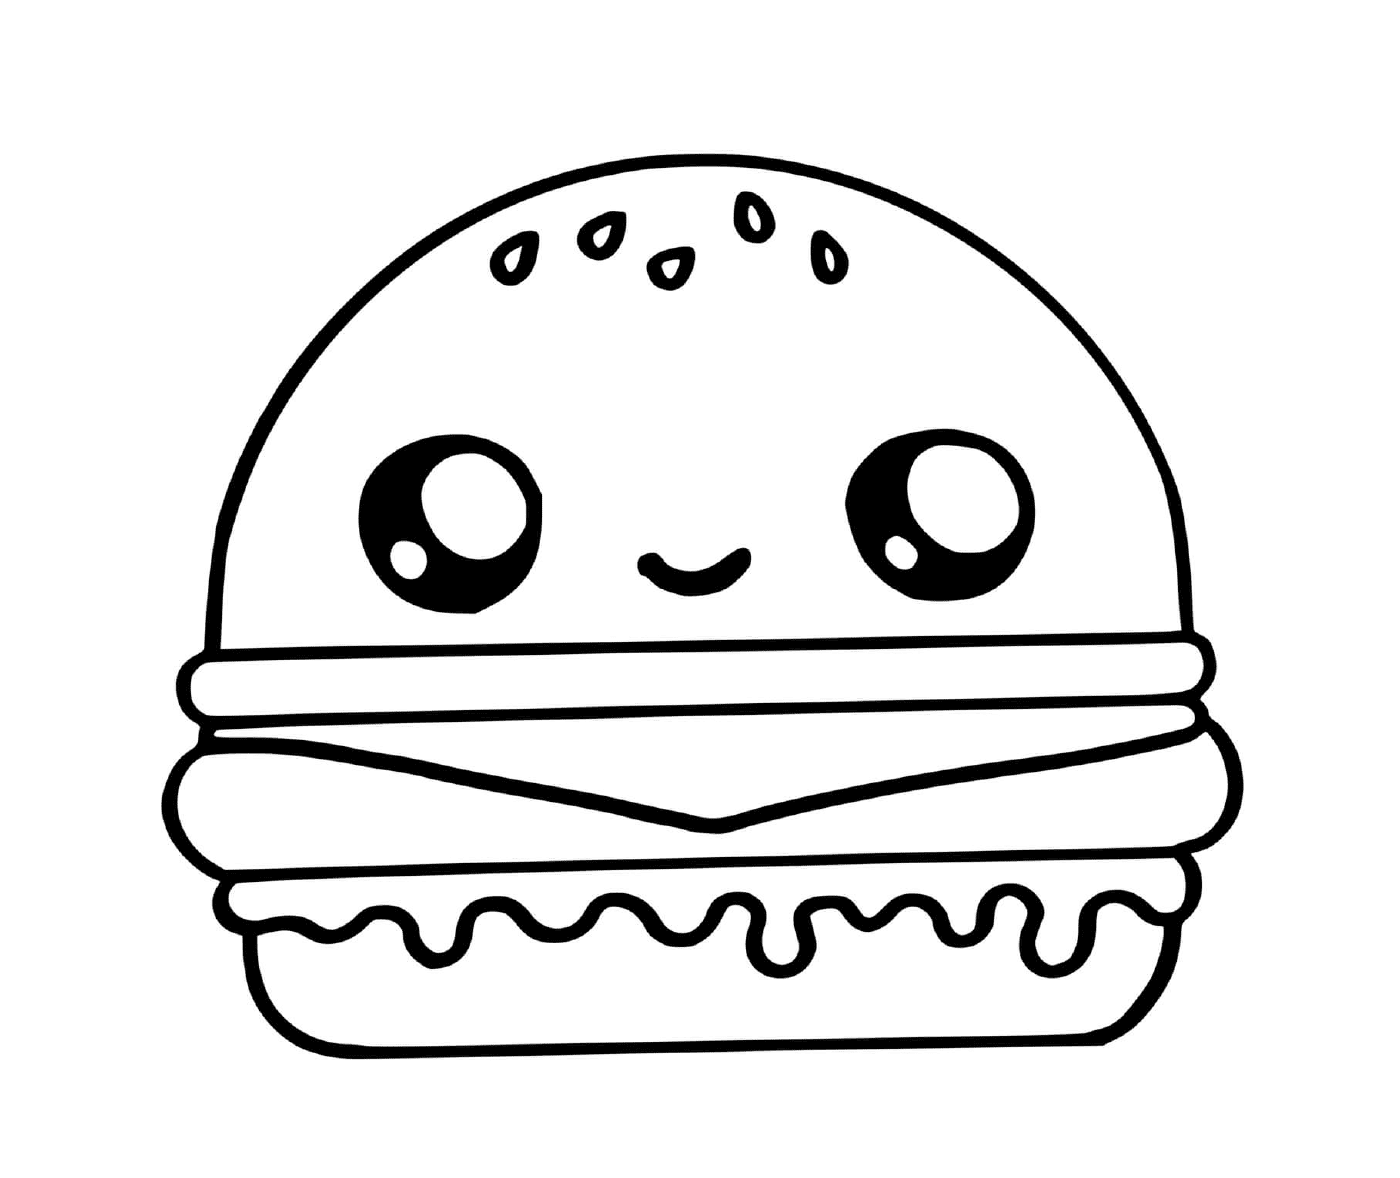  Hamburger kawaii, sweet delight 